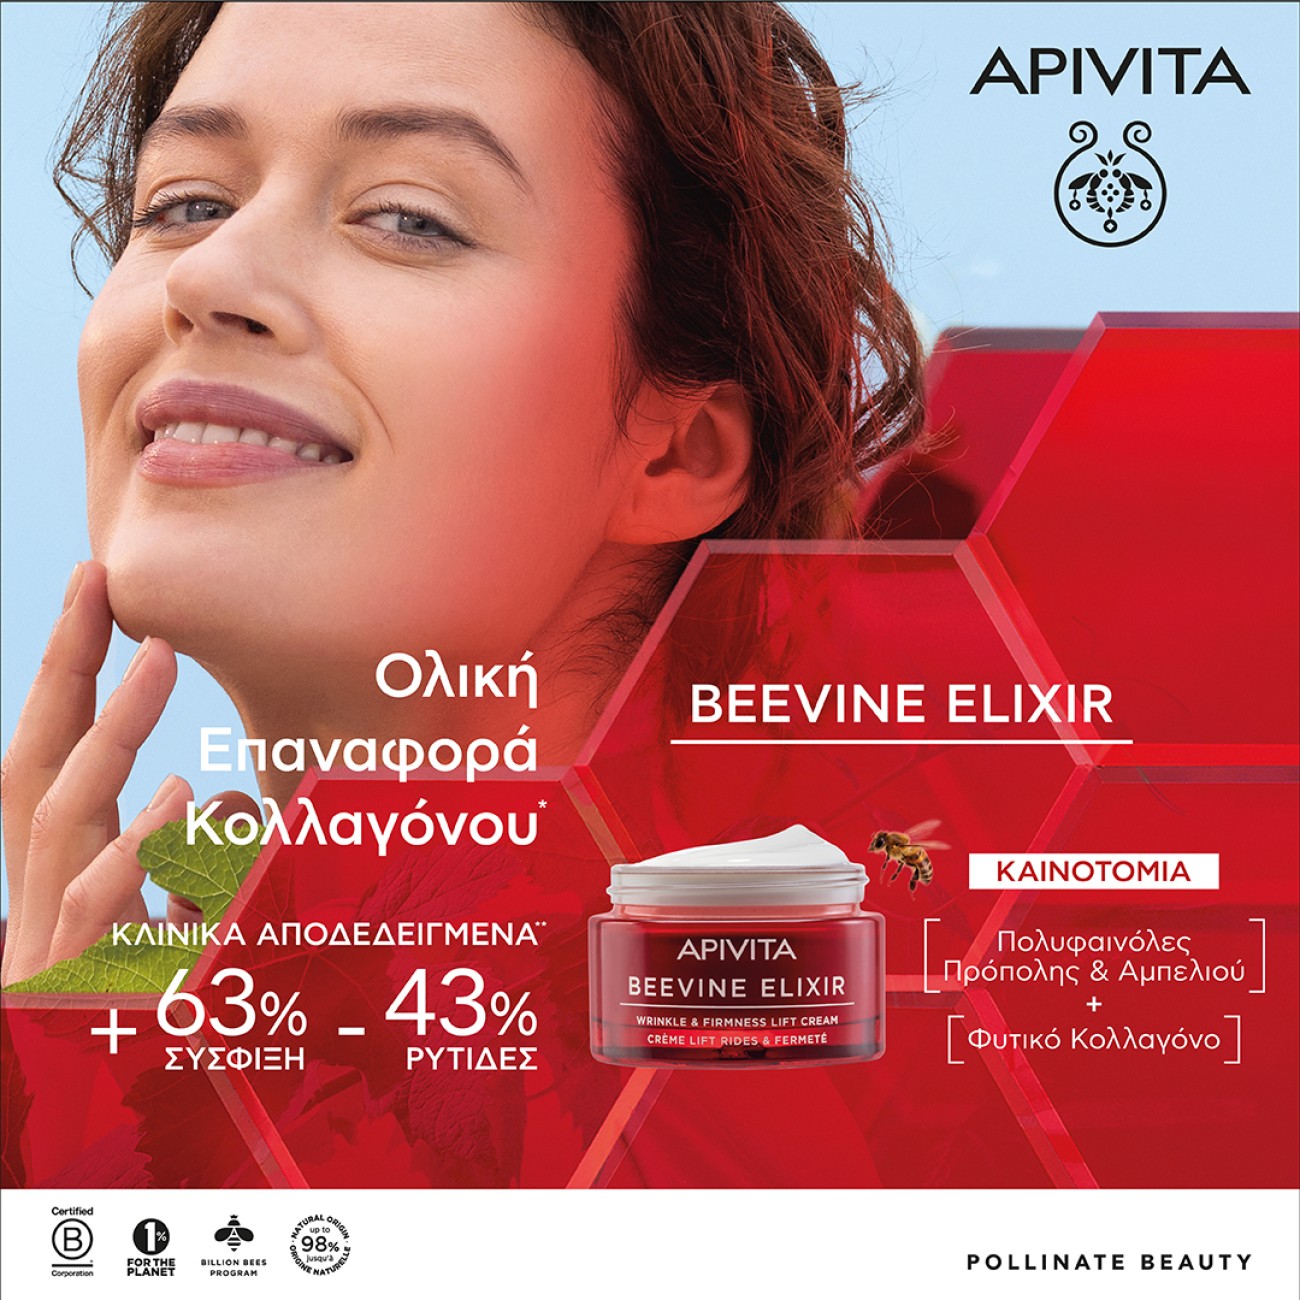 Ανακαλύψτε την νέα σειρά Beevine Elixir της Apivita!